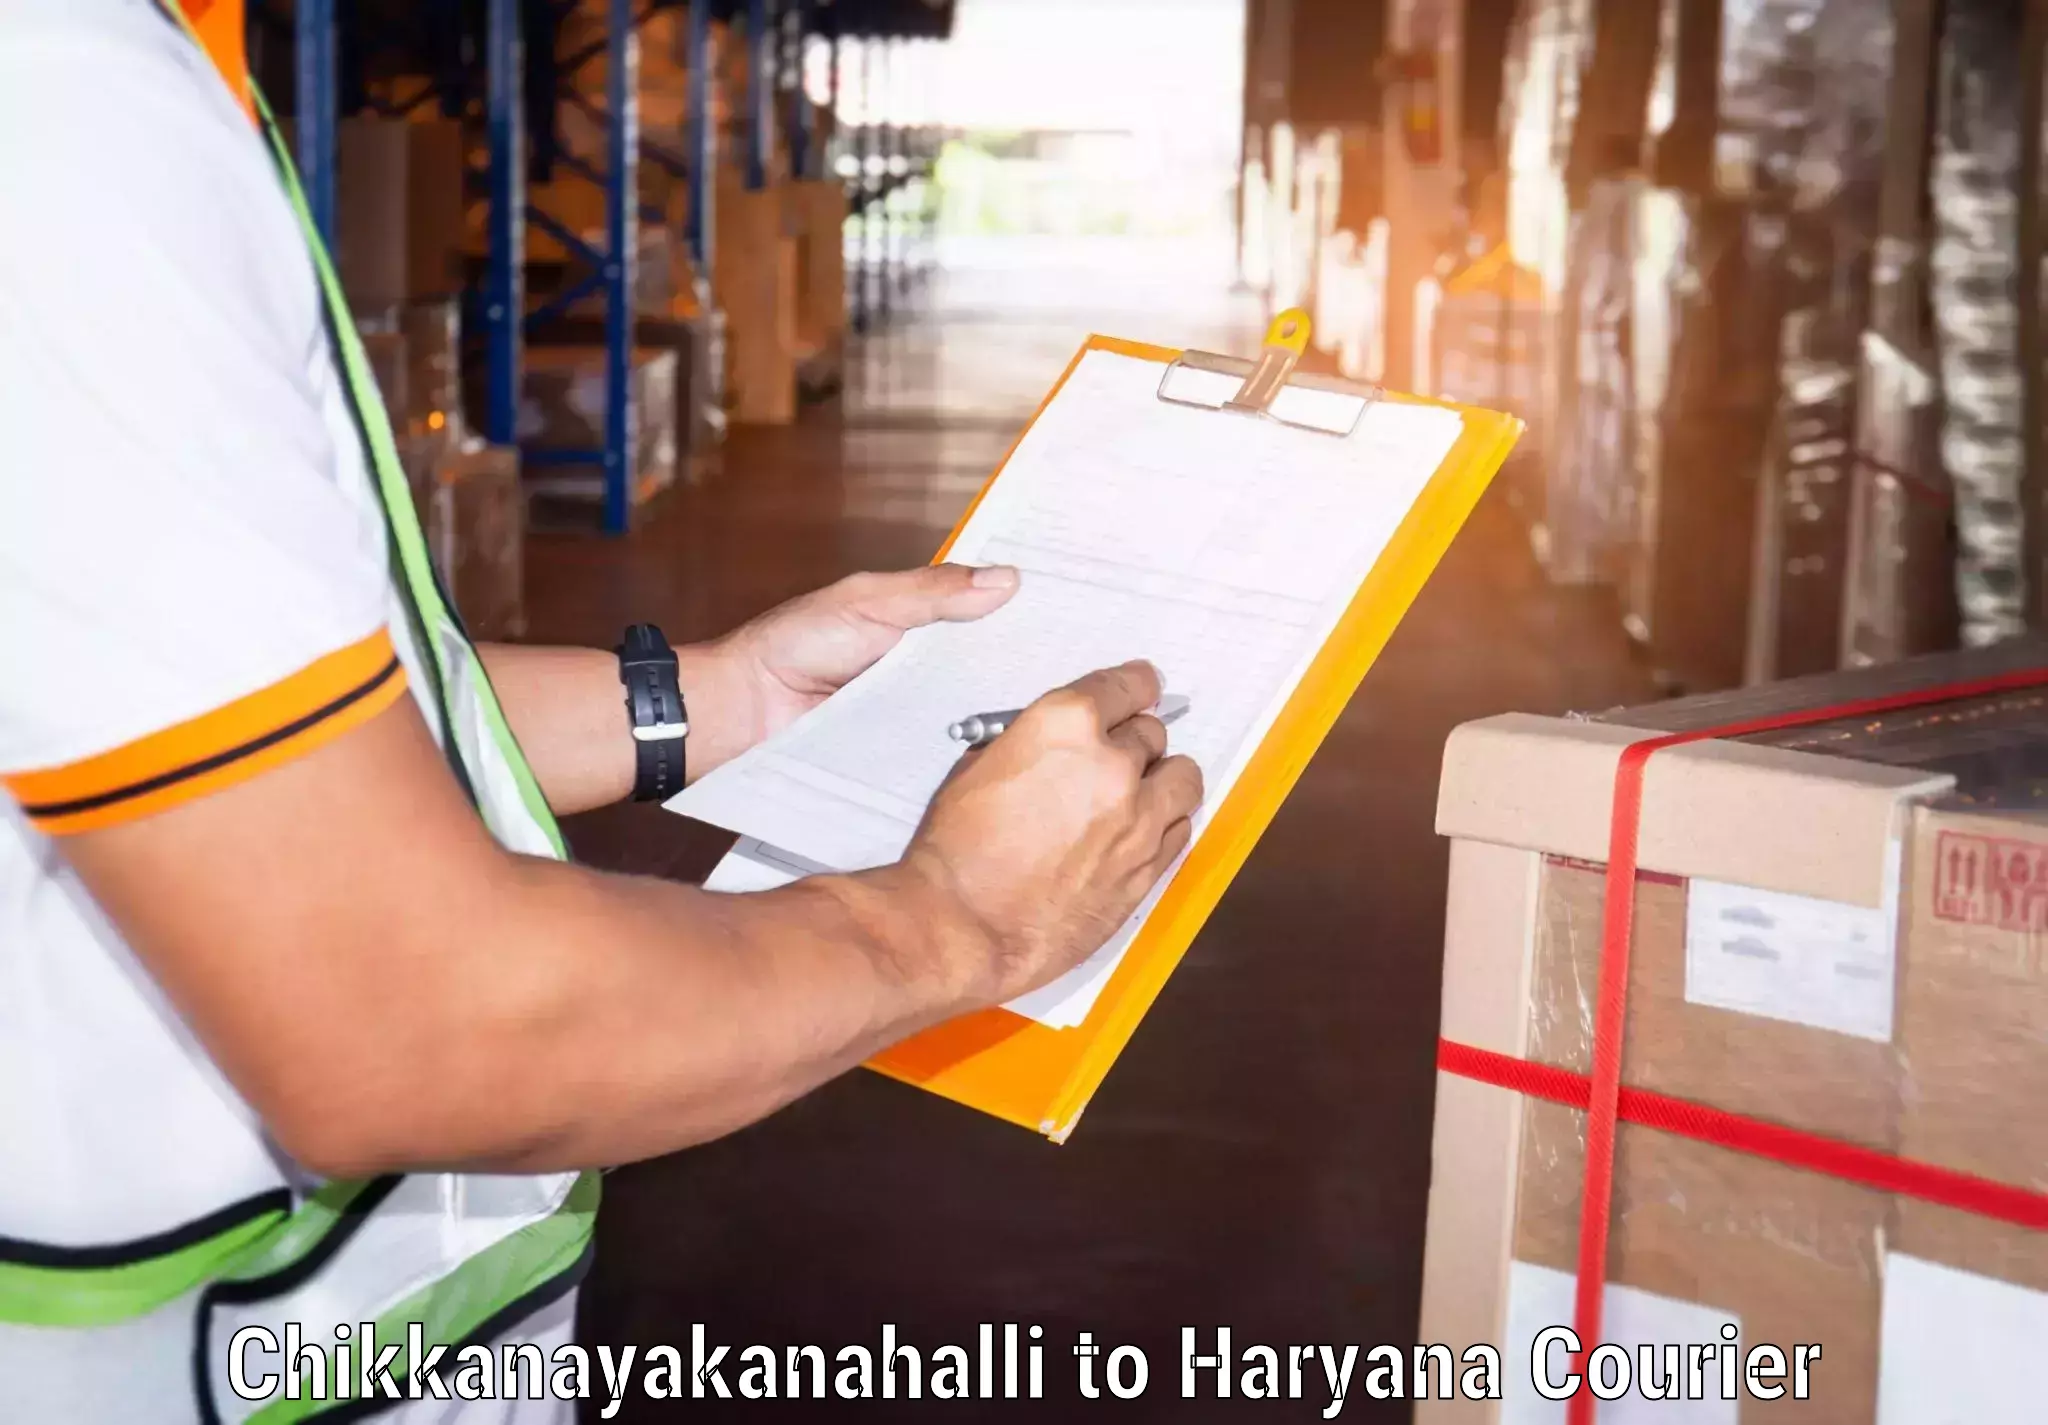 Business logistics support Chikkanayakanahalli to Haryana